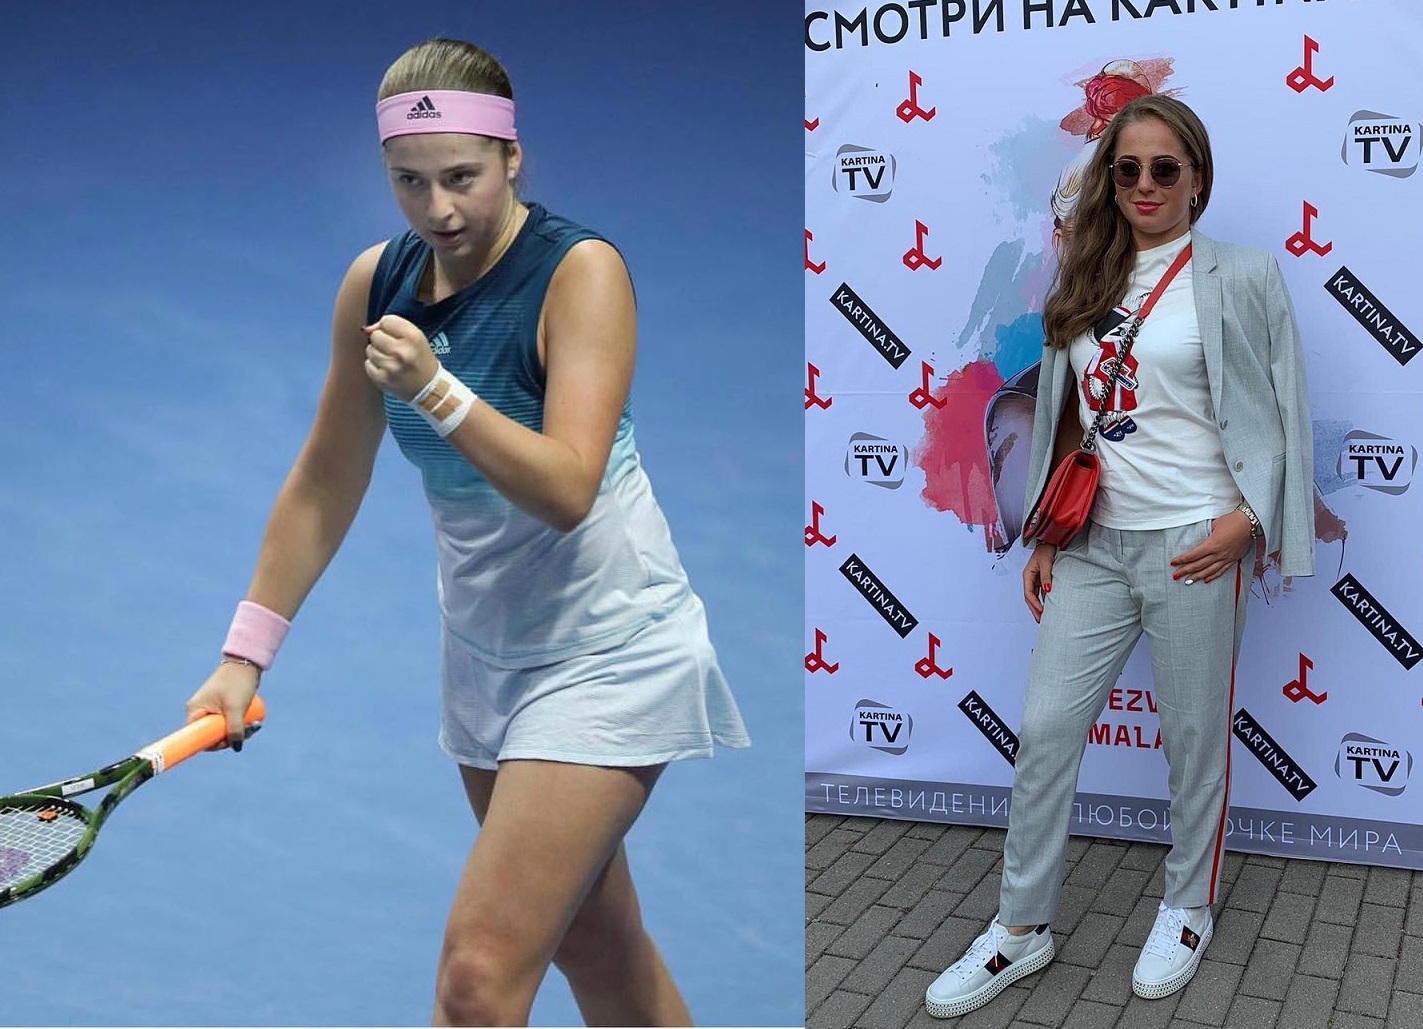 Jelena Ostapenko slim and fit